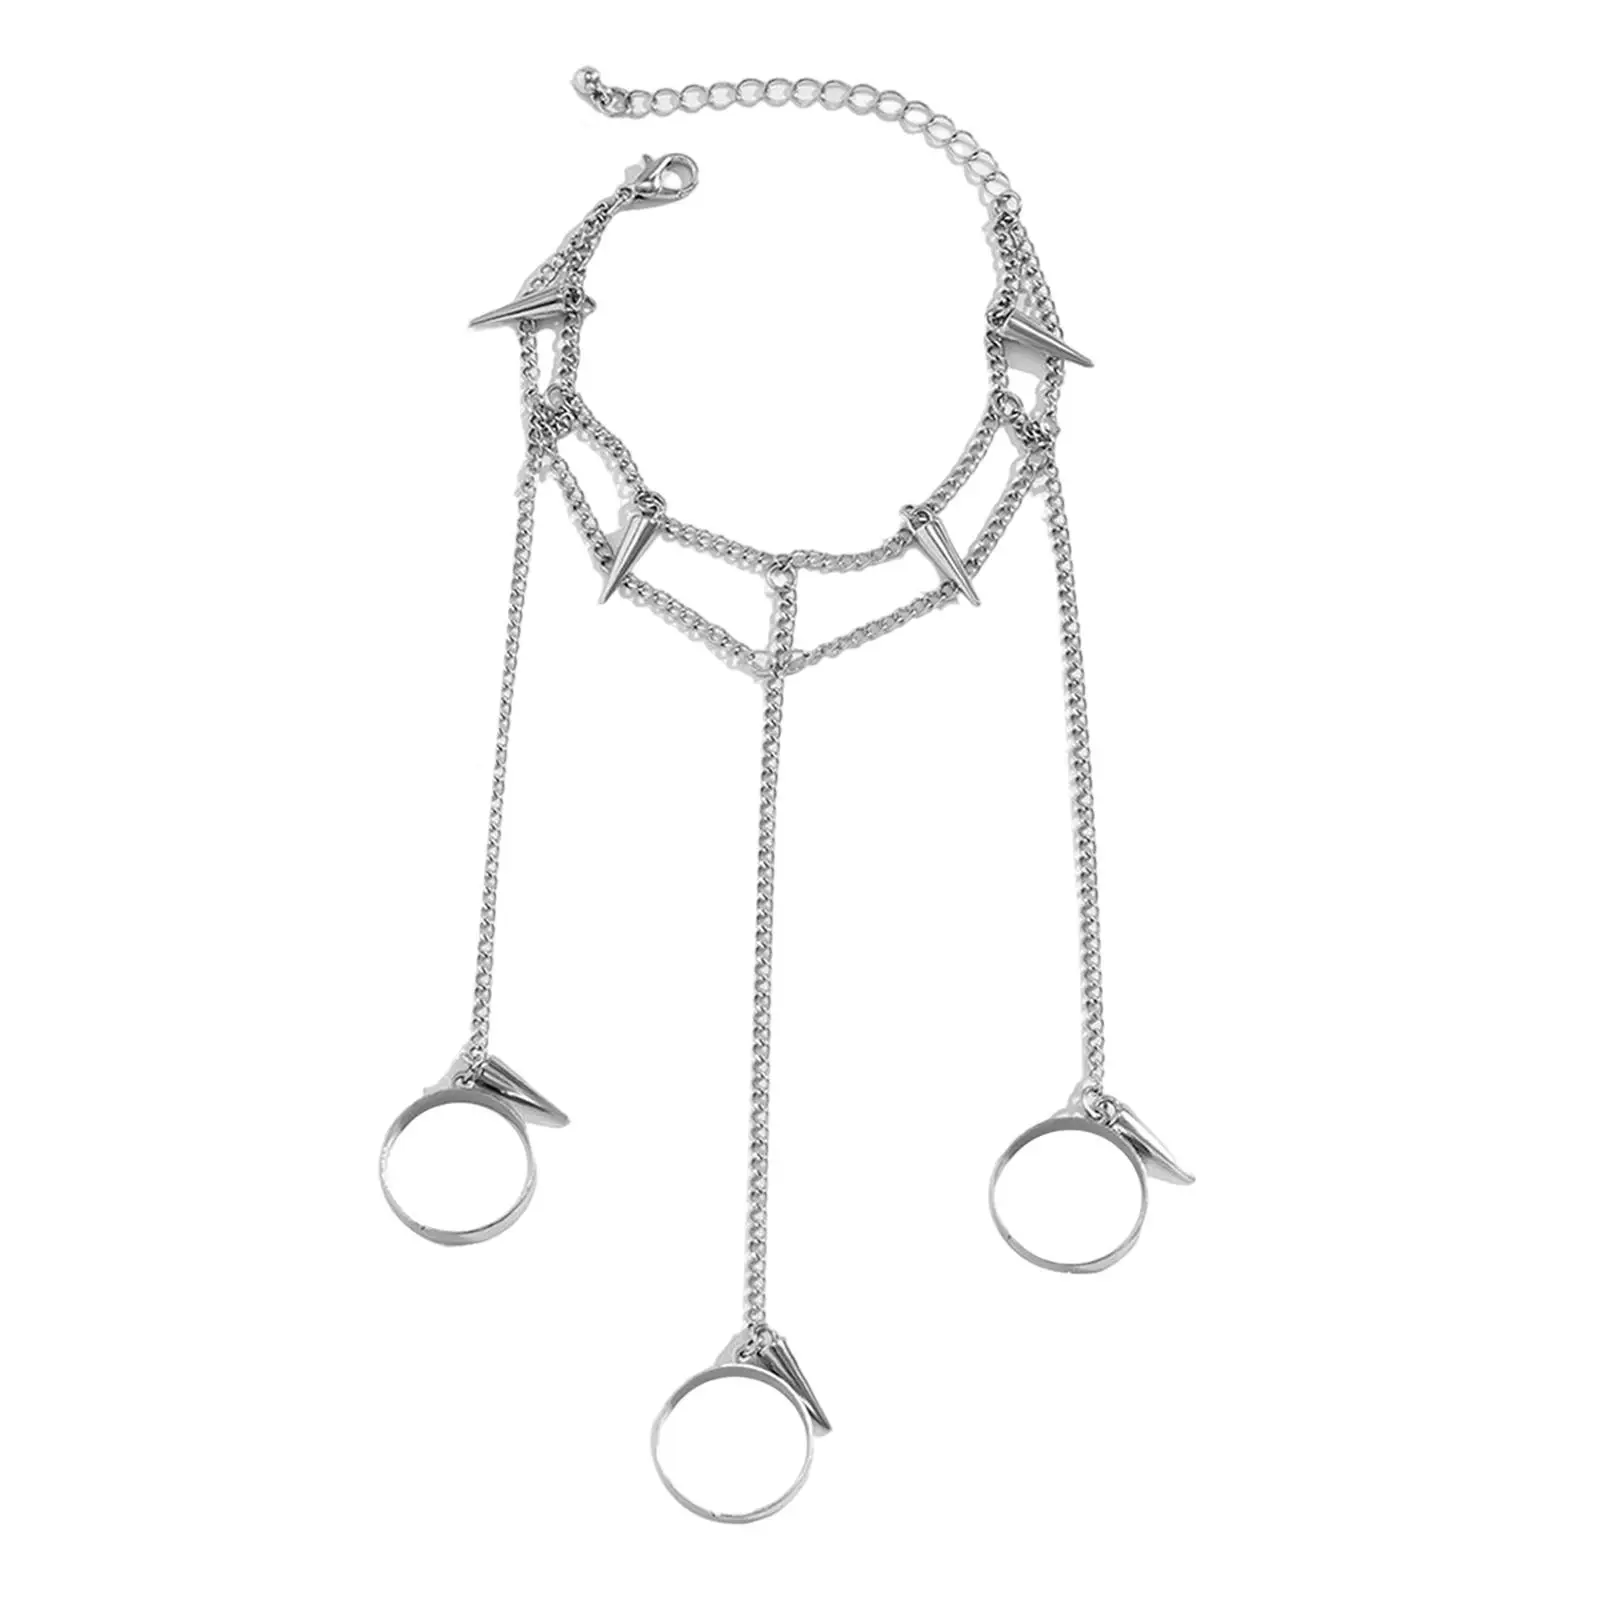 Ring Bracelet Chain Tassel Bracelet with Rings Wrist Chain for Girls